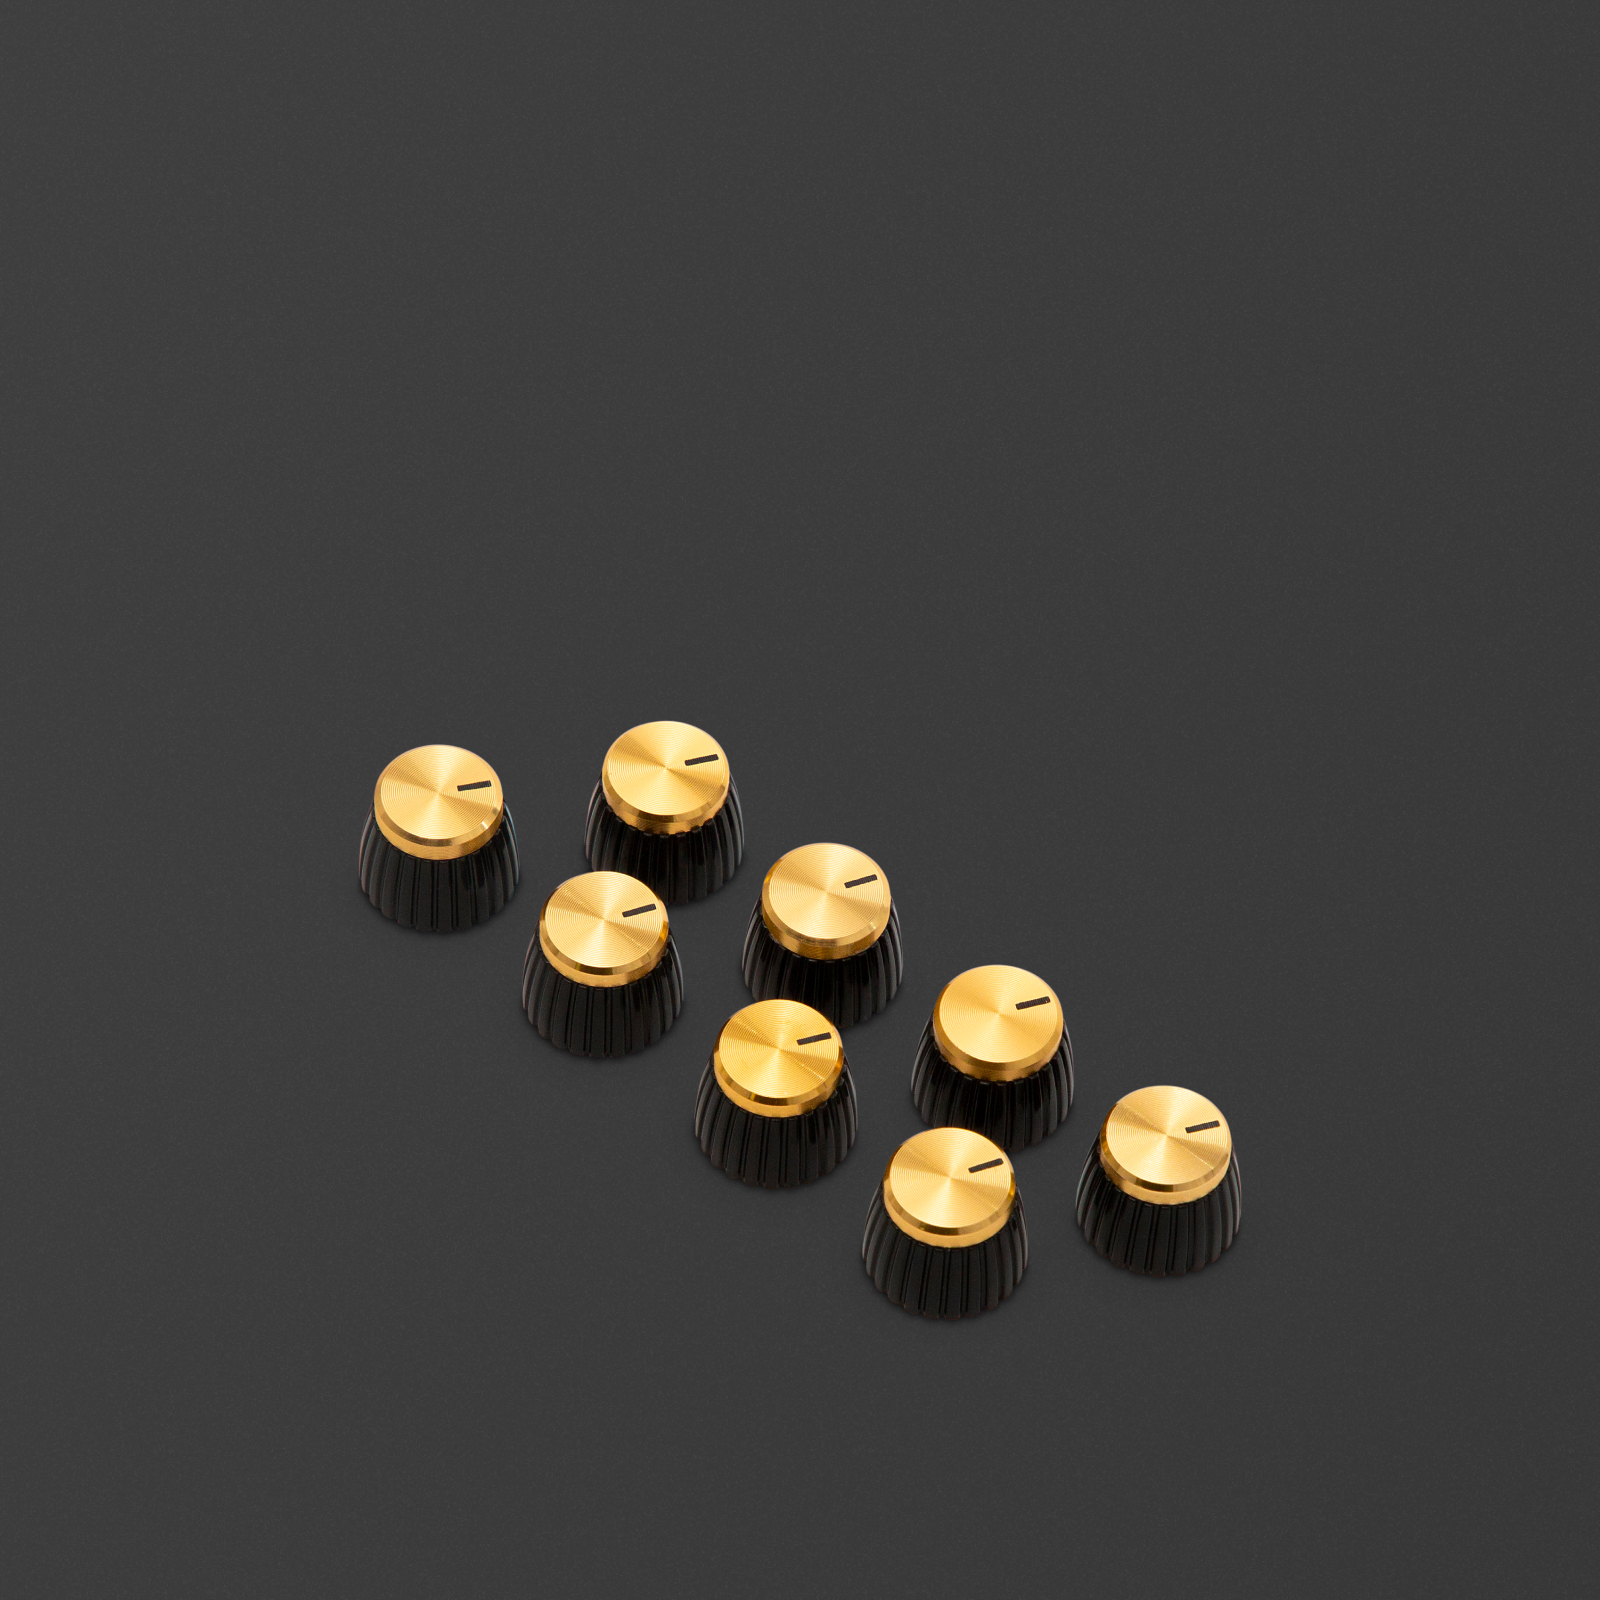 Pack de 8 perillas doradas de potenciómetros D donde el marcador apunta al lado plano del perfil D